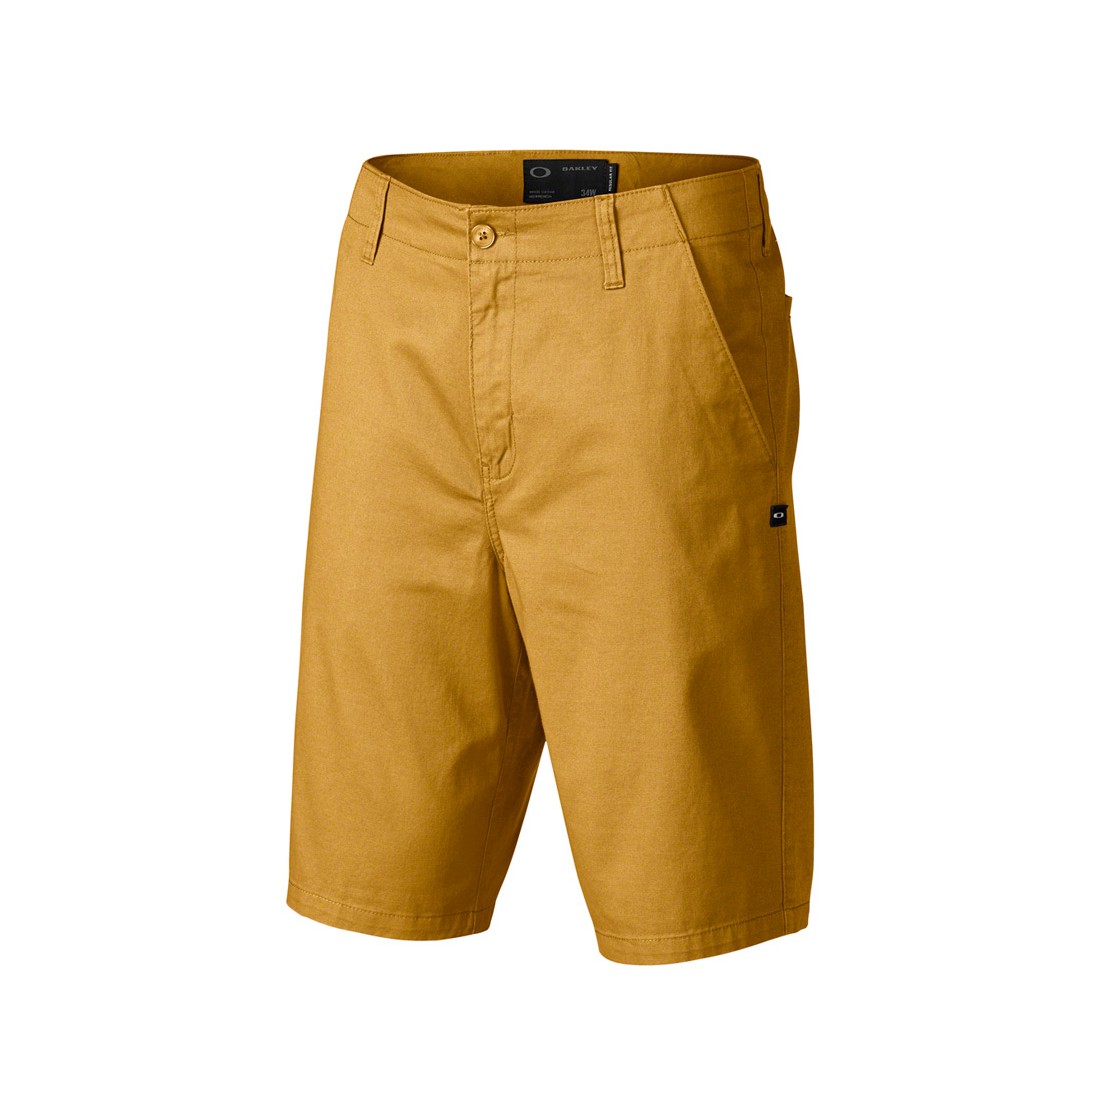 Pantalones cortos corto Oakley Rad Short